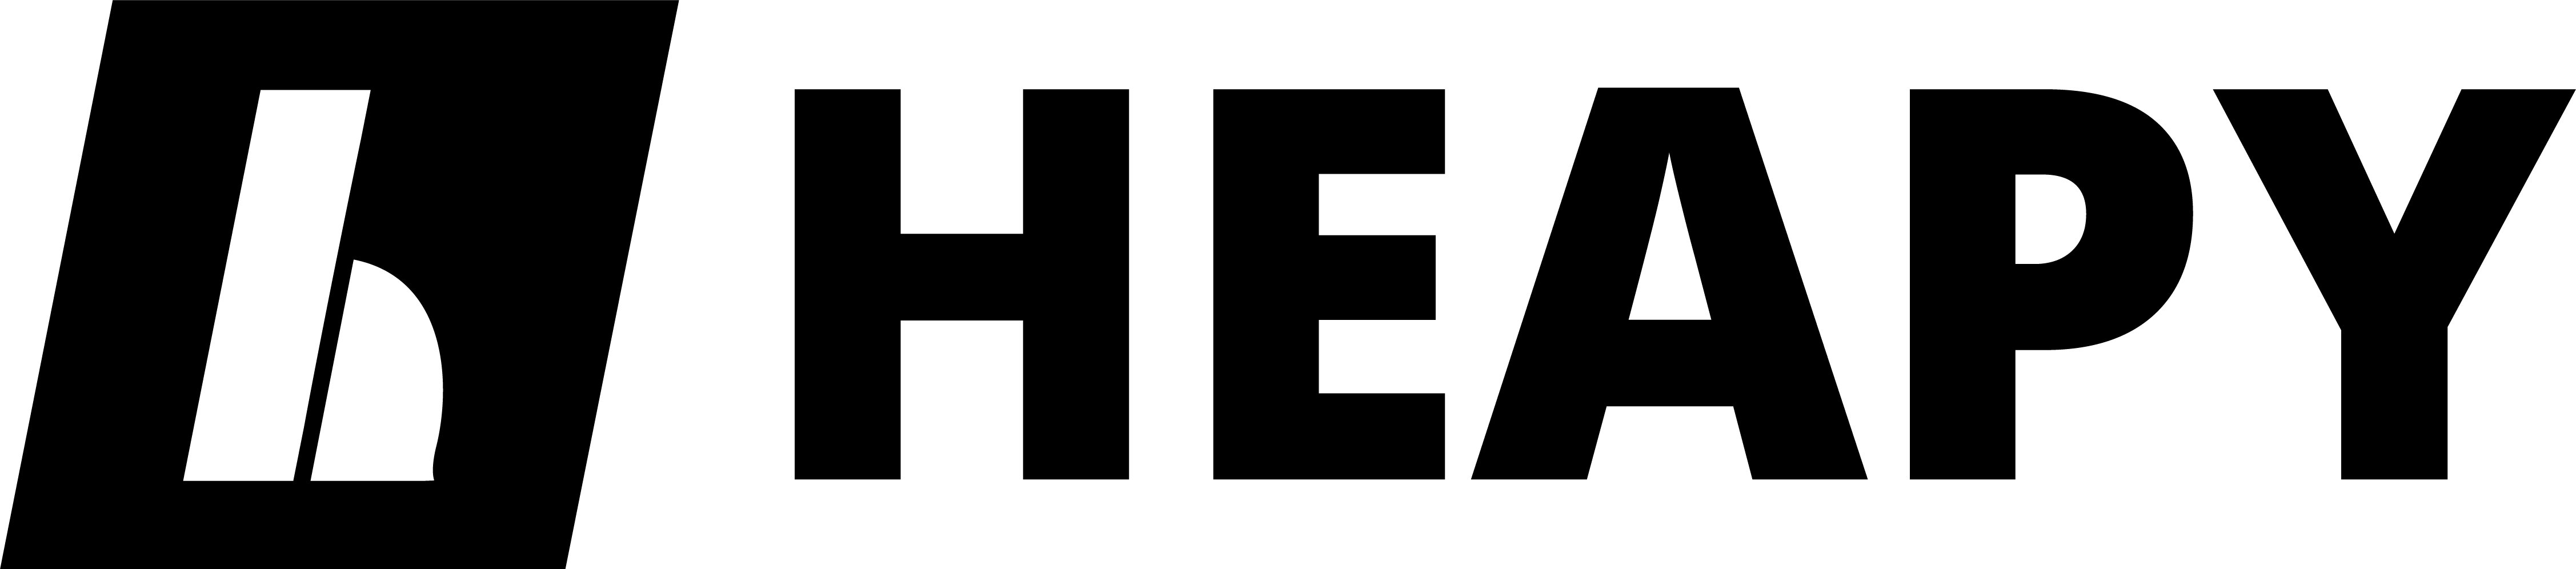 Heapy Engineering sponsor logo